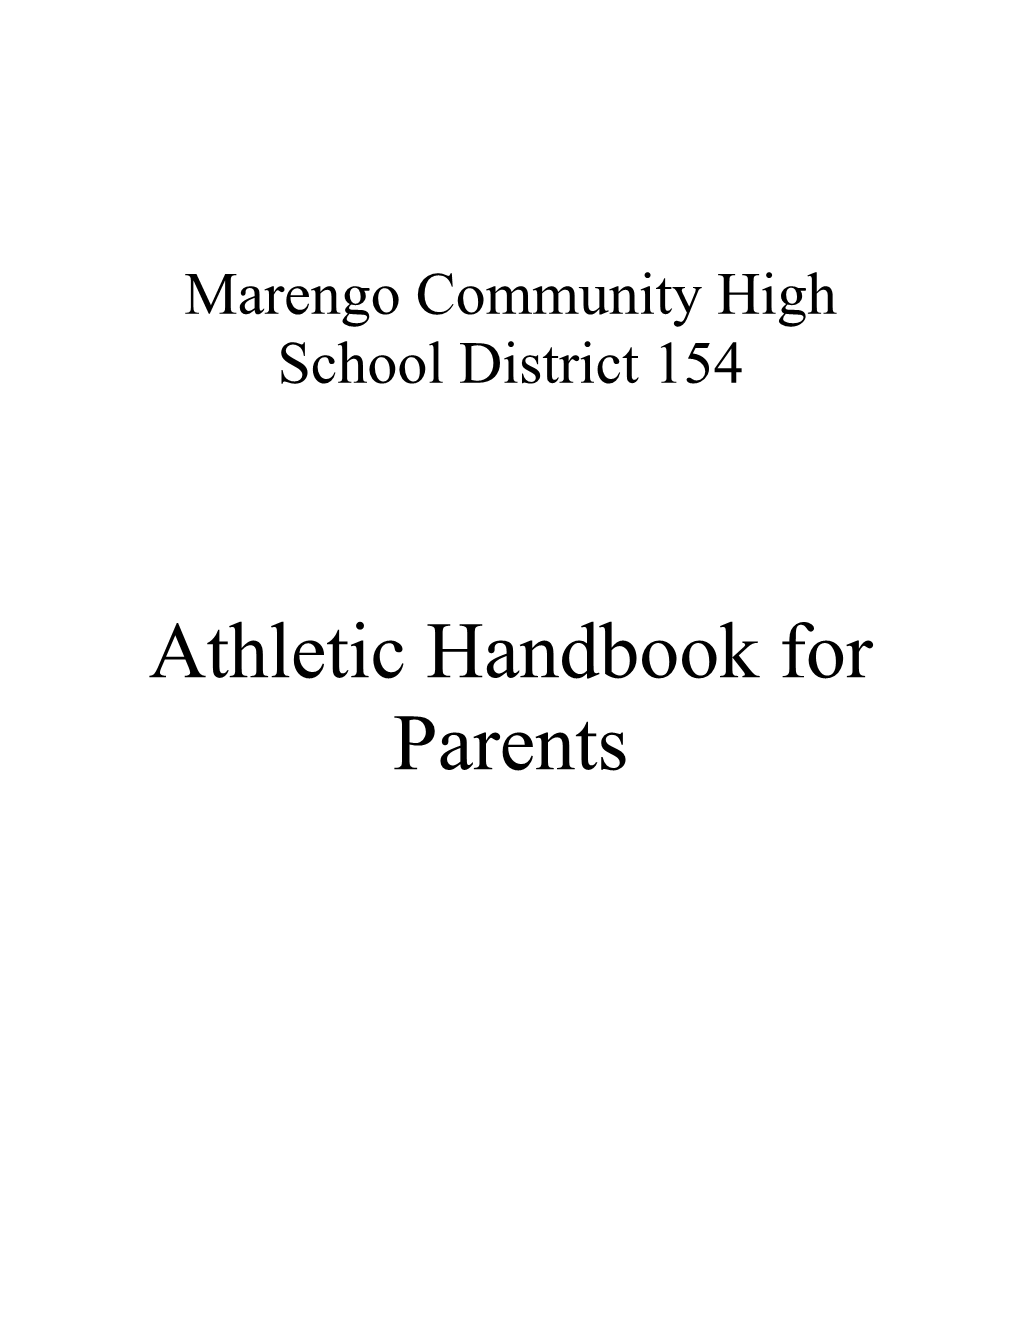 Marengo Community High School District 156